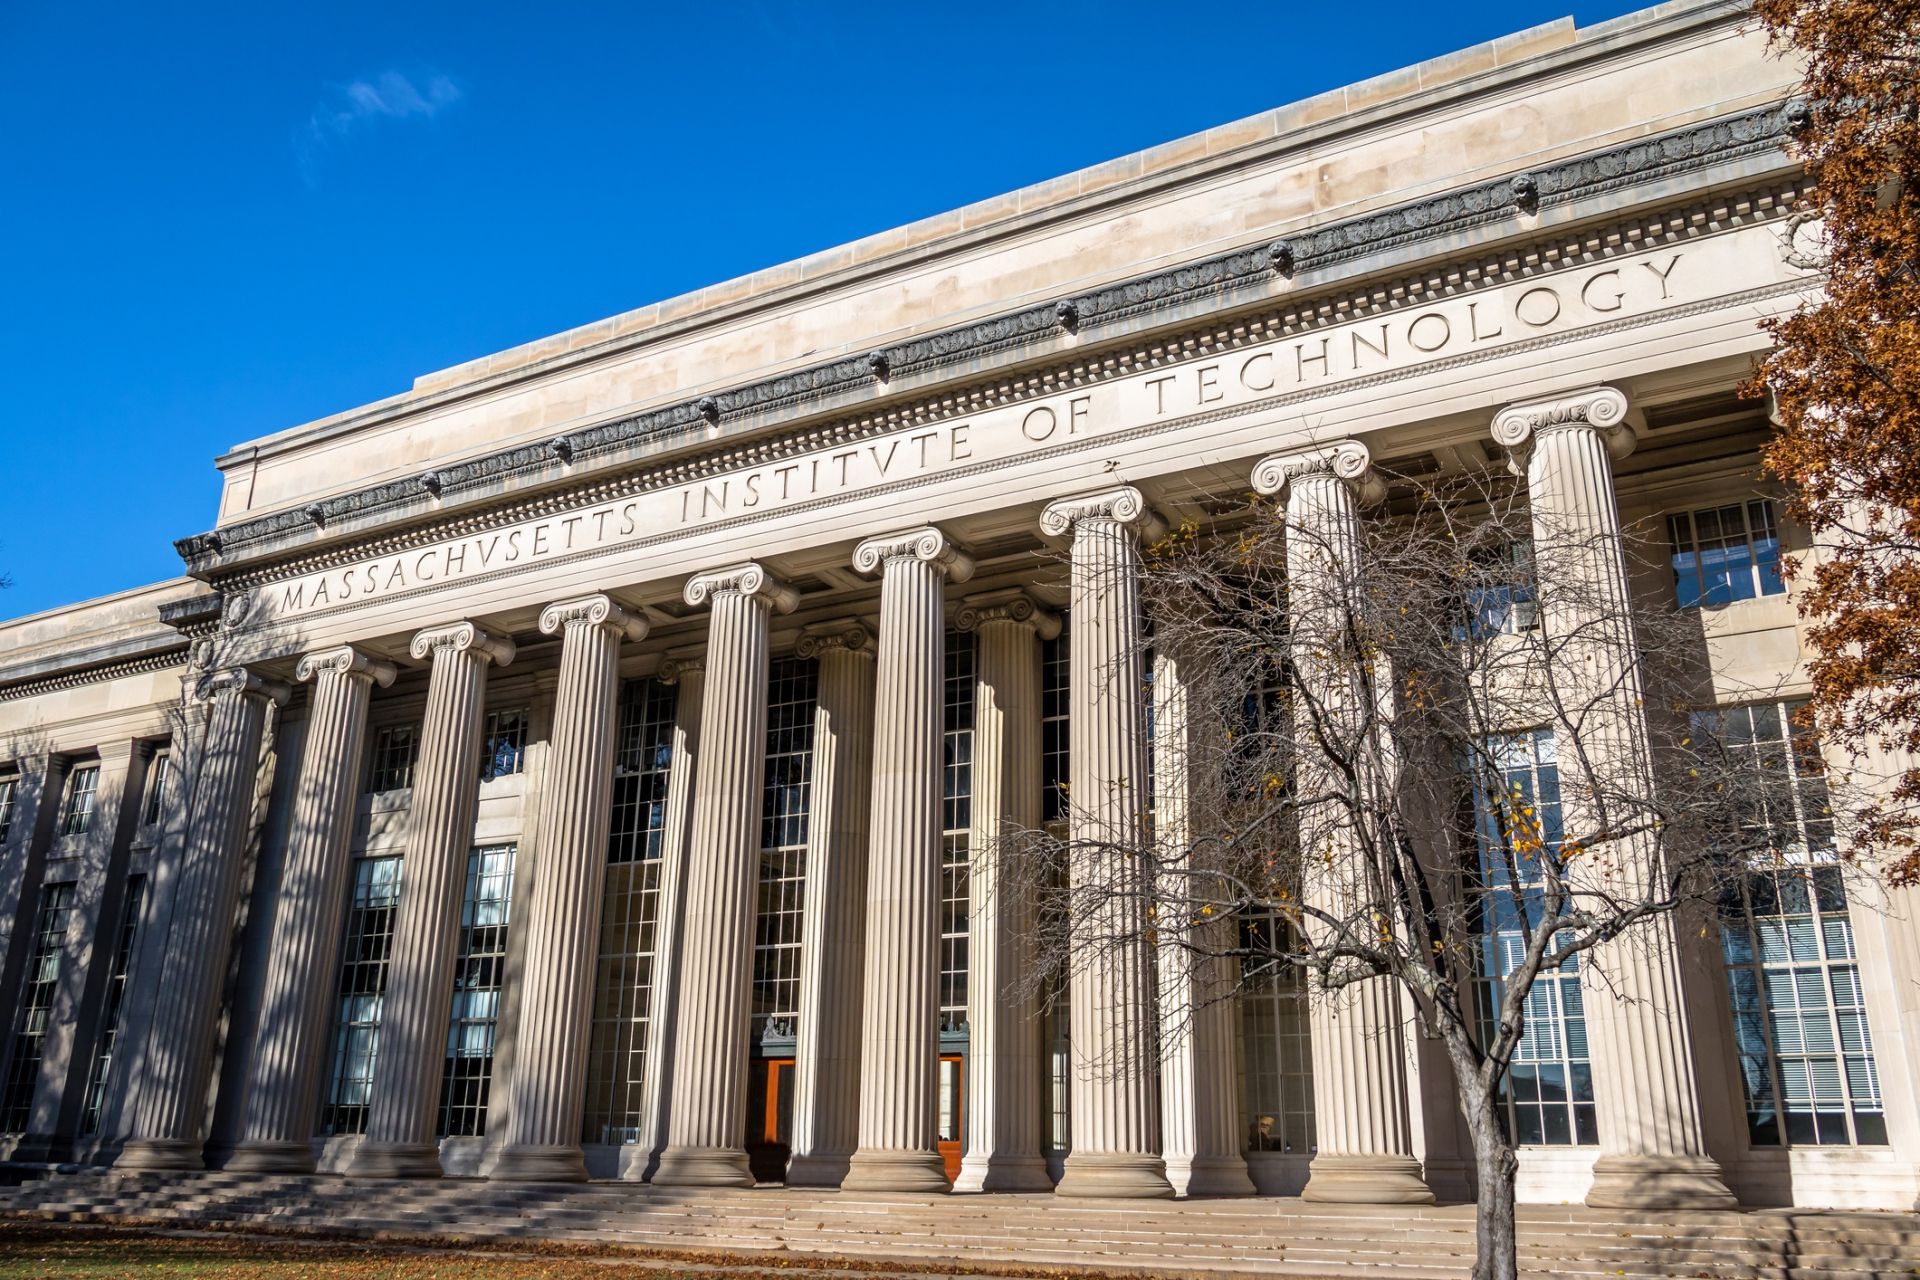  Масачузетския технологичен институт заема пето място